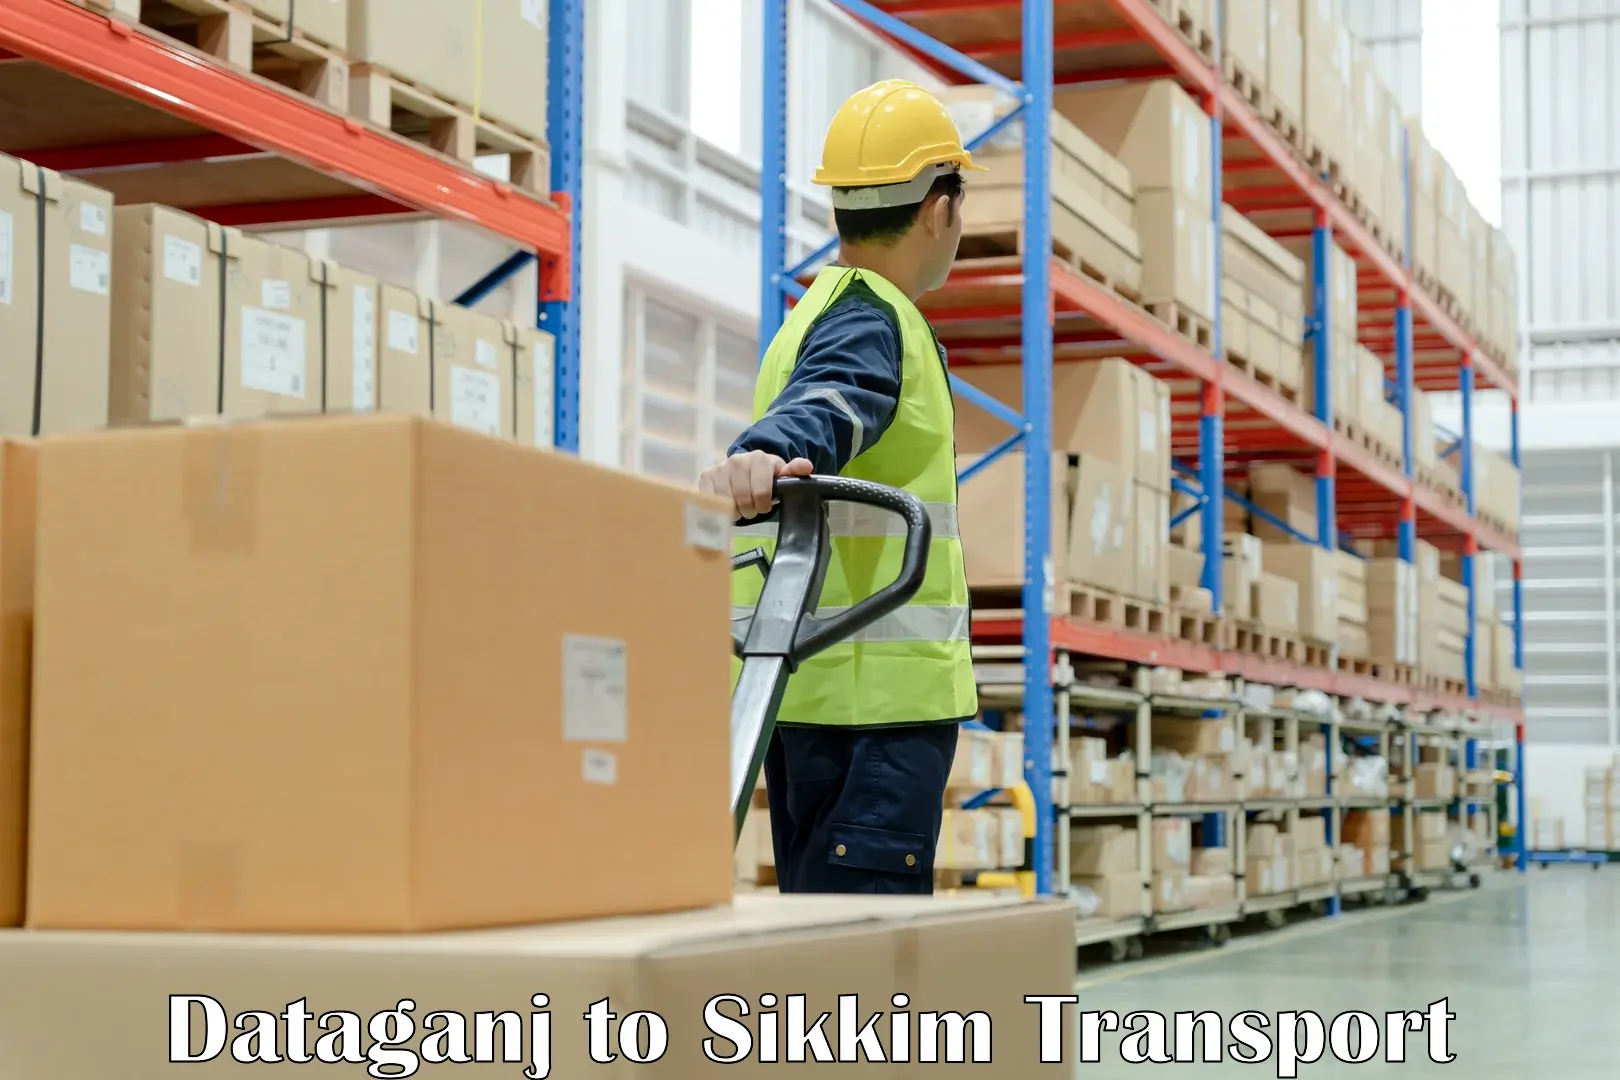 Nearest transport service Dataganj to South Sikkim